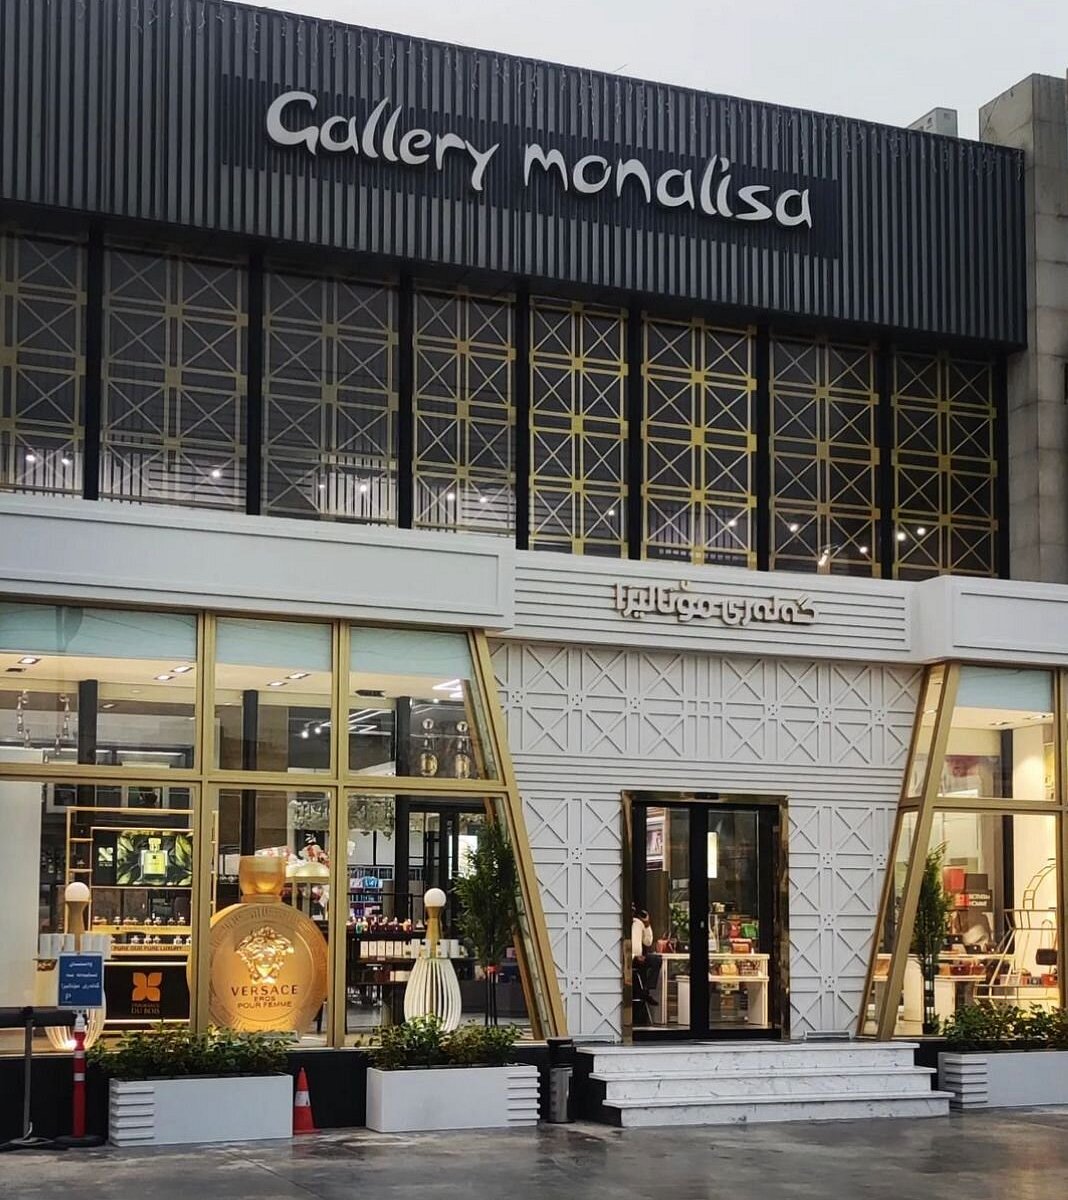 Monalisa shopping center